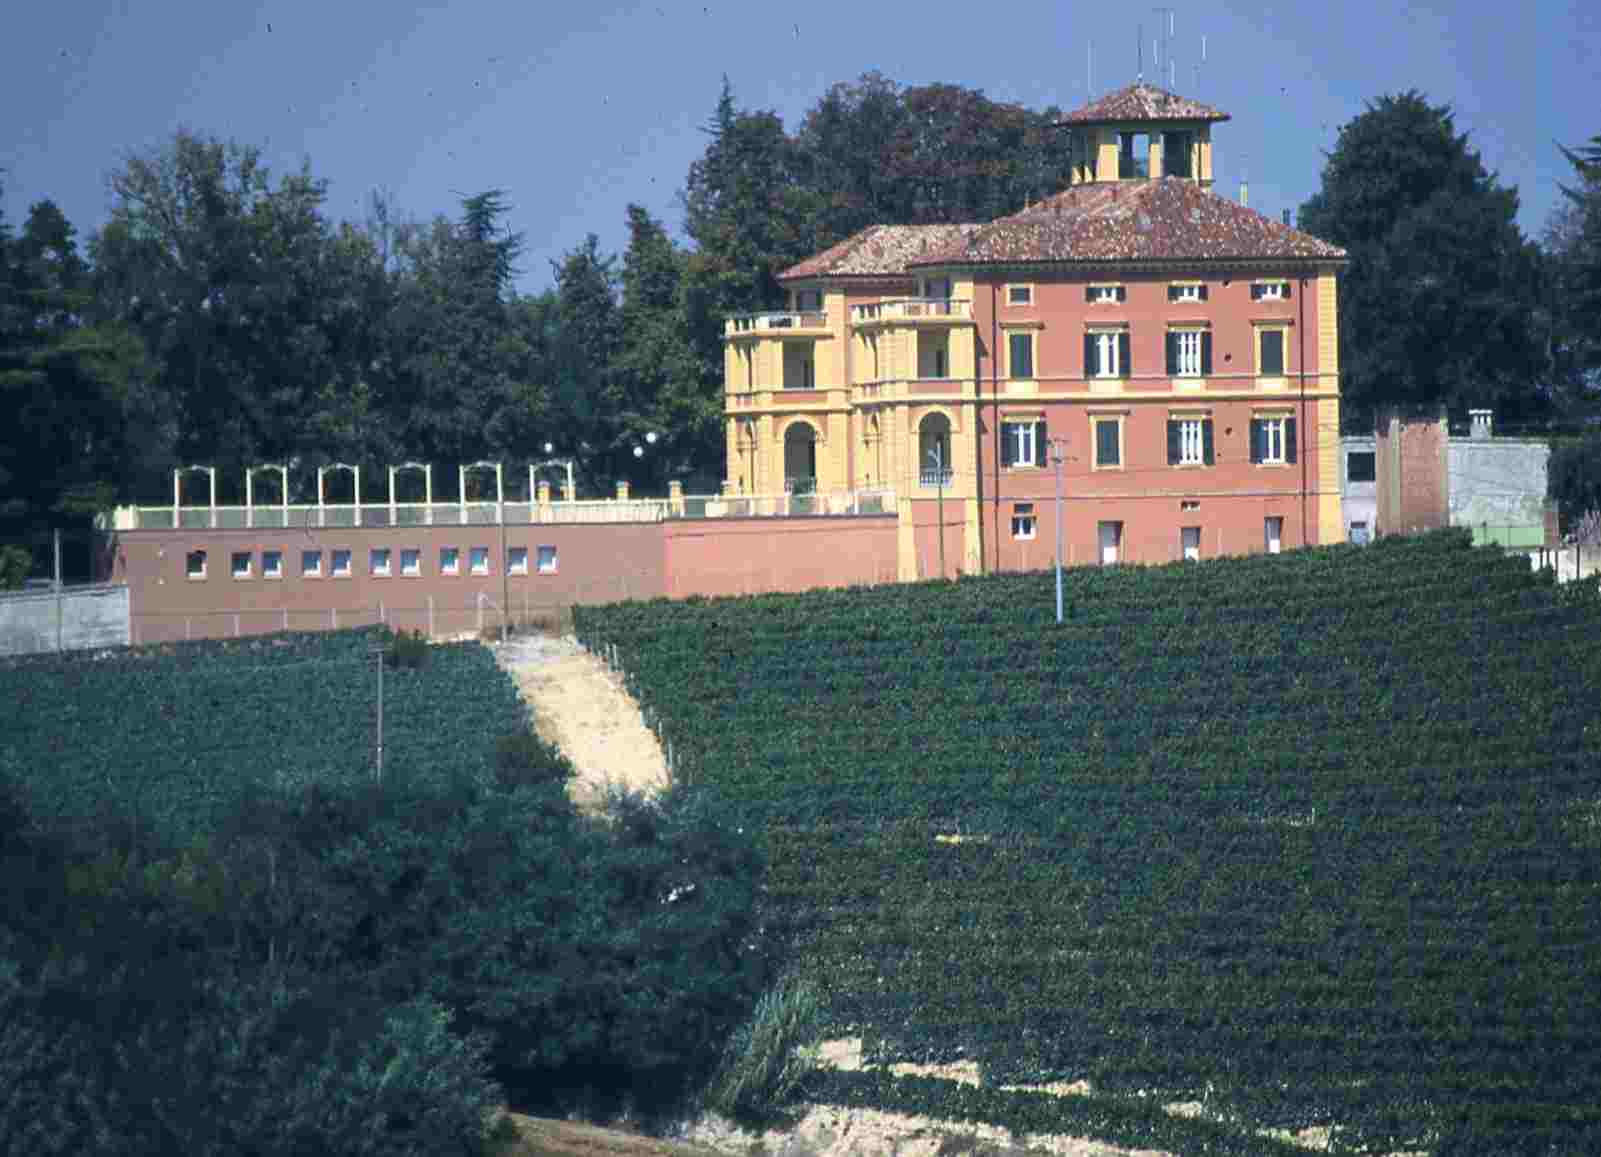 Veduta di Villa Badoglio a San Marzanotto (AT), inserita in uno straordinario paesaggio viticolo. La struttura rappresenta uno  dei futuri centri di riferimento per l’accoglienza turistica dell’Astigiano.